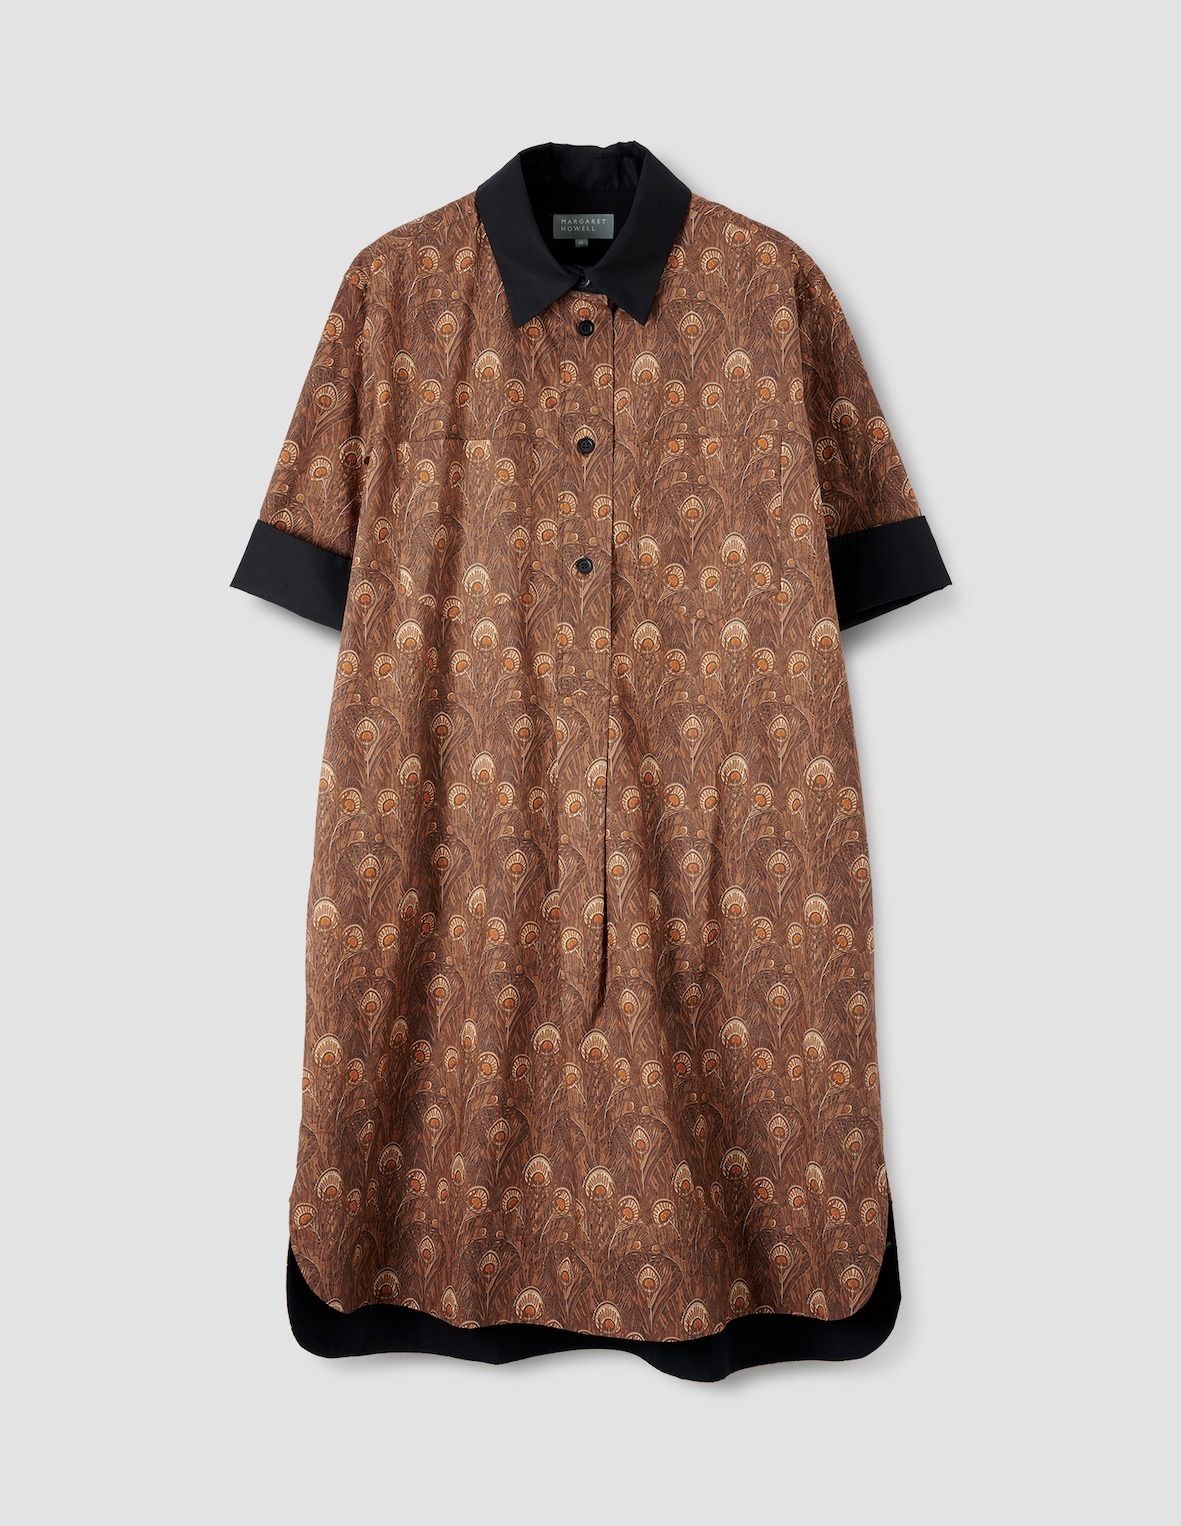 「ショートスリーブシャツドレス」88,000円